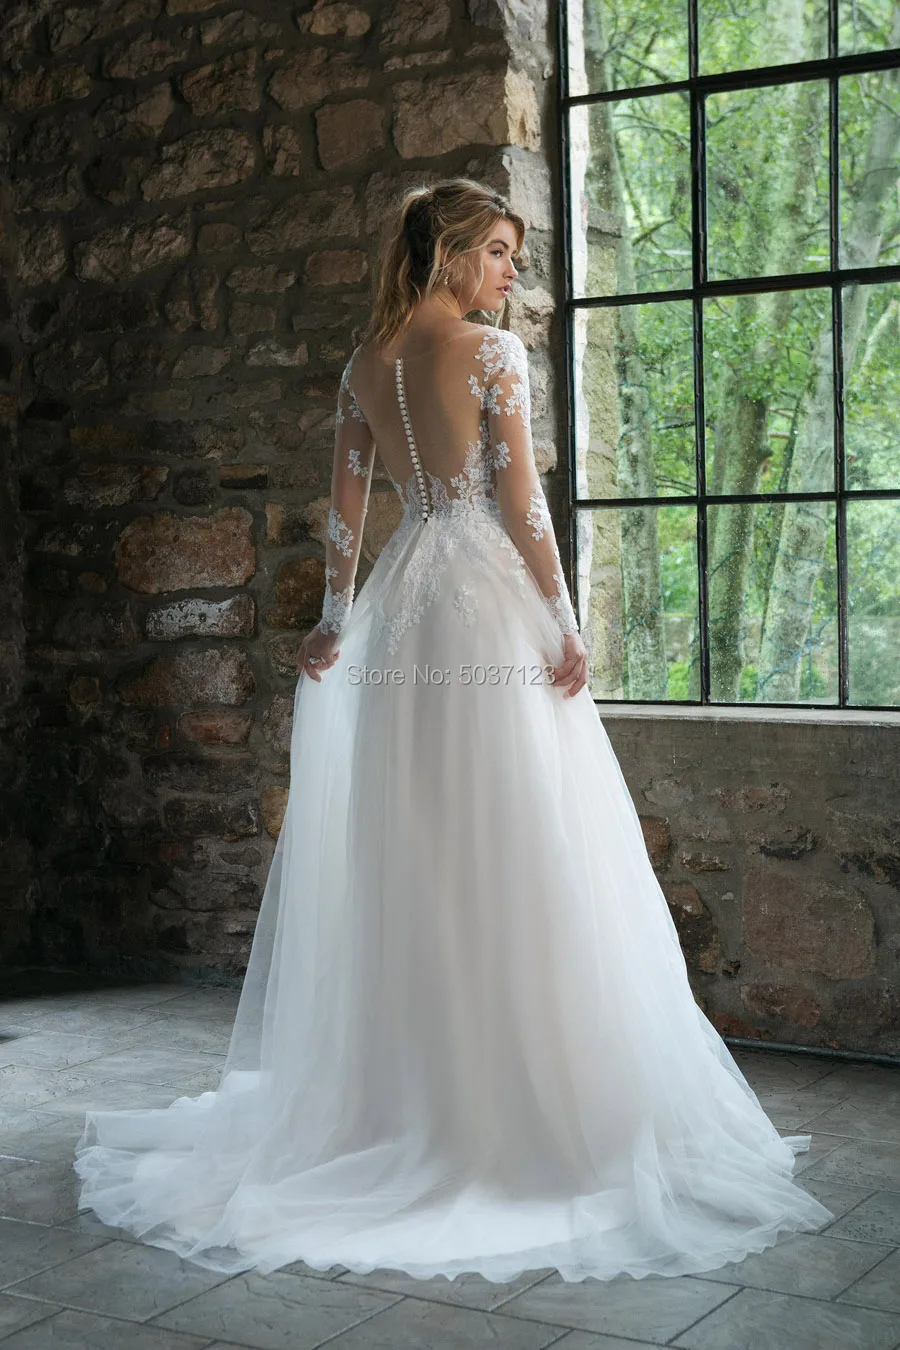 A Line Tulle Vestido De Noiva Wedding Dresses Scoop Long Sleeves Lace Appliques Court Train Button Illusion Bridal Gowns